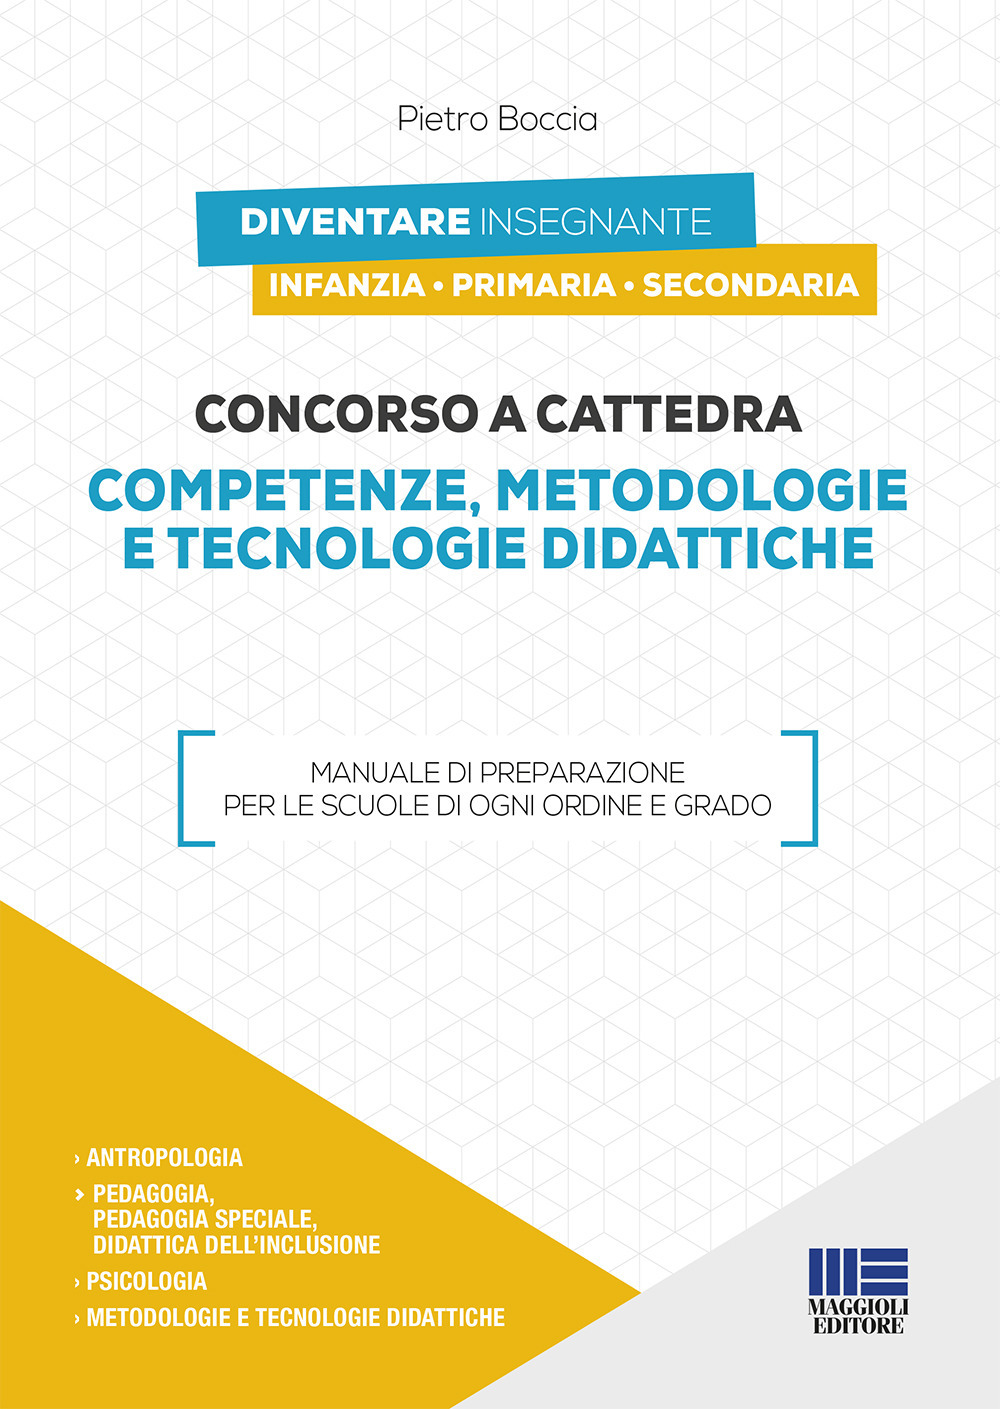 Image of Concorso a cattedra 2019. Competenze, metodologie e tecnologie didattiche